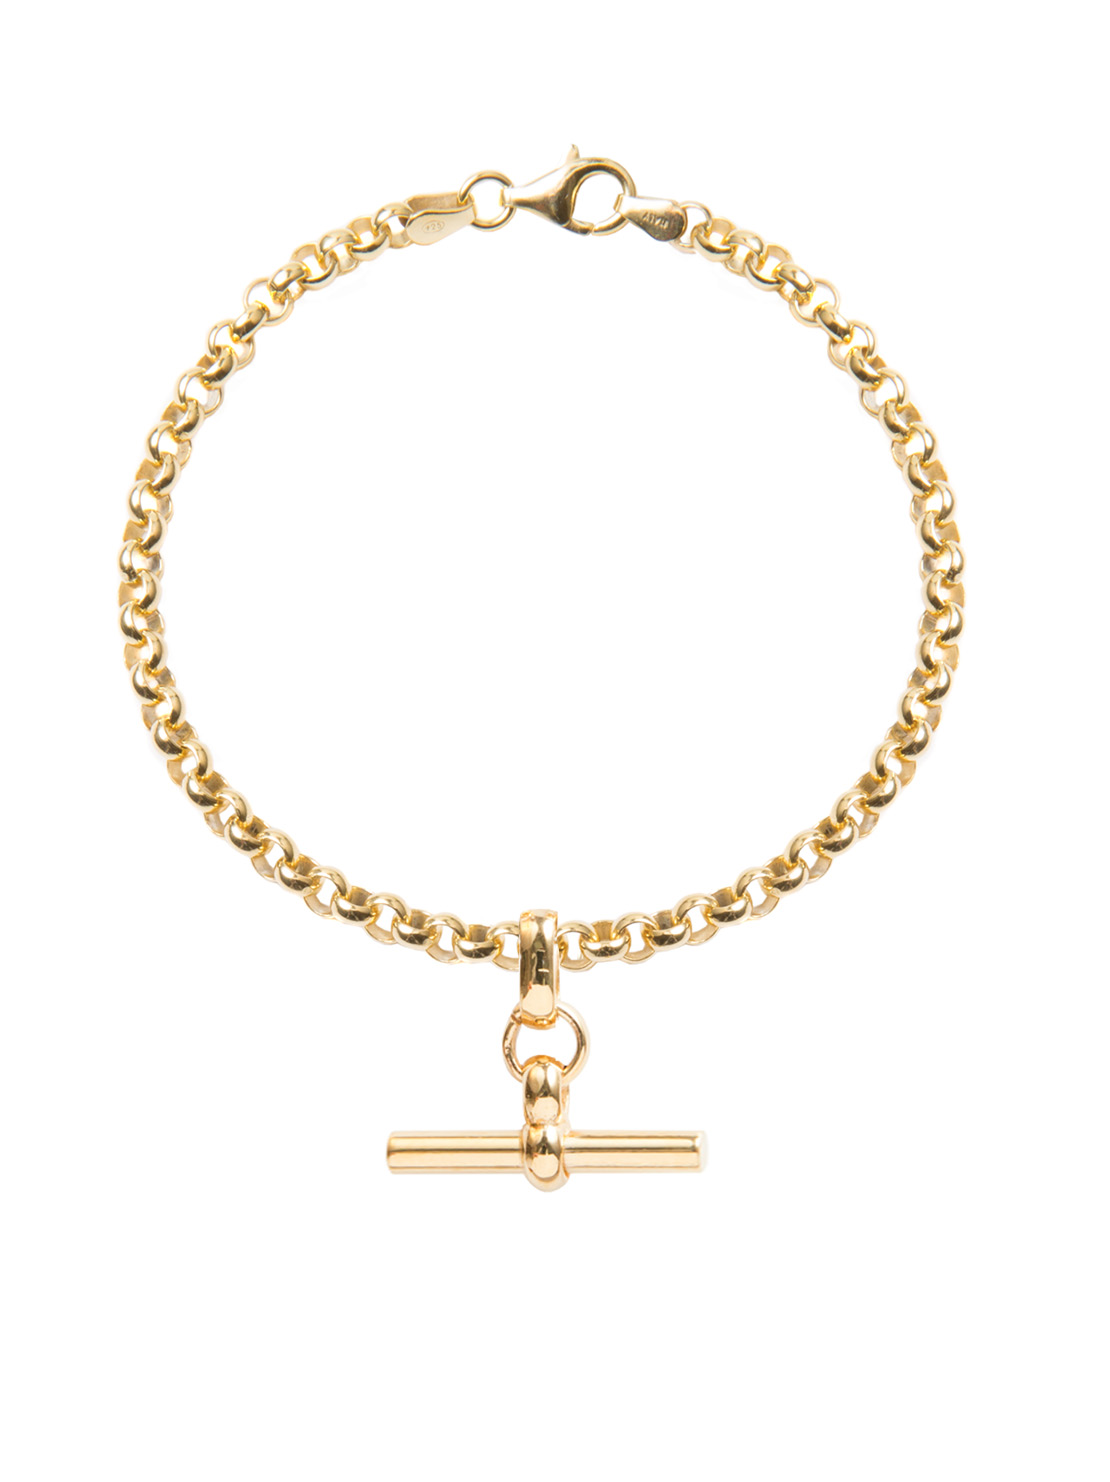 Tilly Sveaas Gold Belcher Bracelet with Gold T-Bar